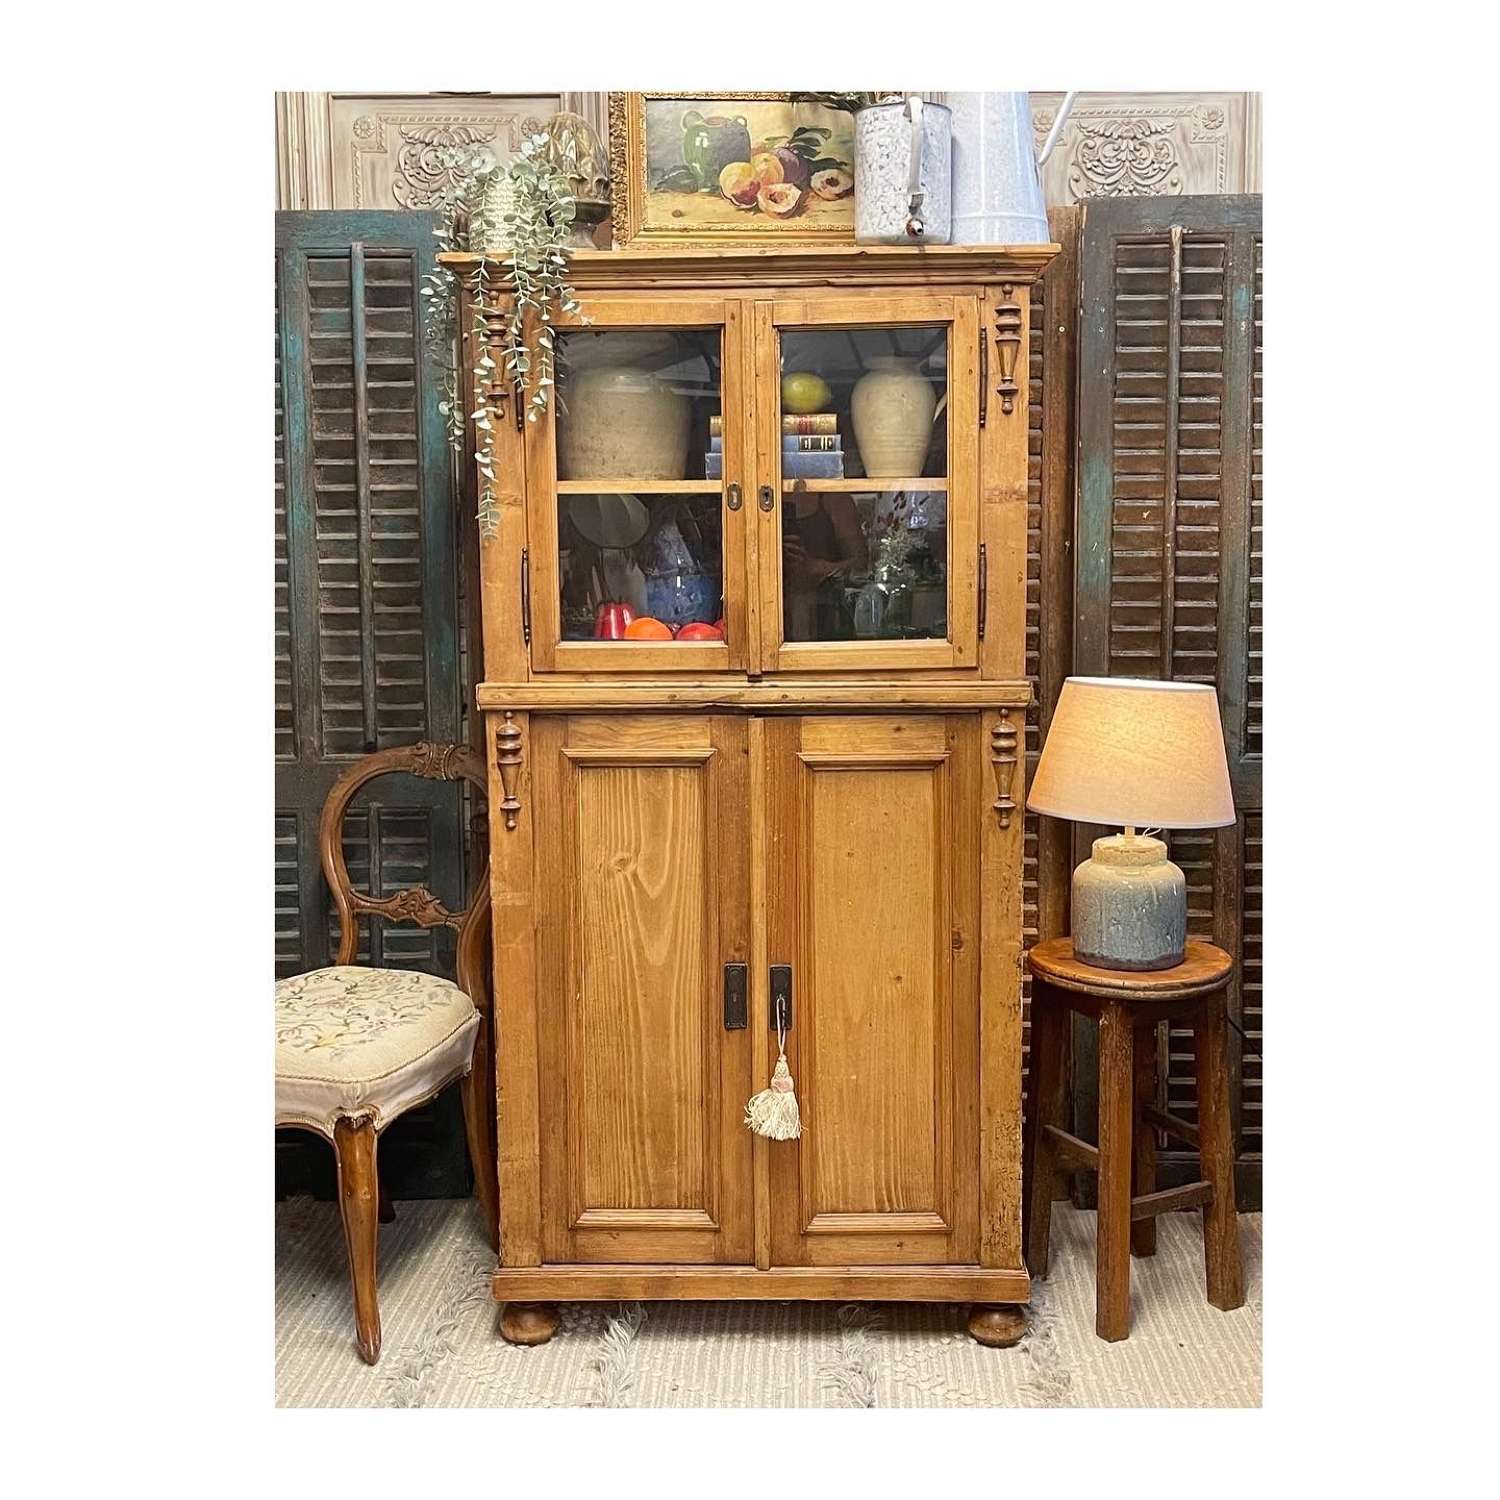 Antique Rustic Pine Cabinet, Larder, Glazed Dresser